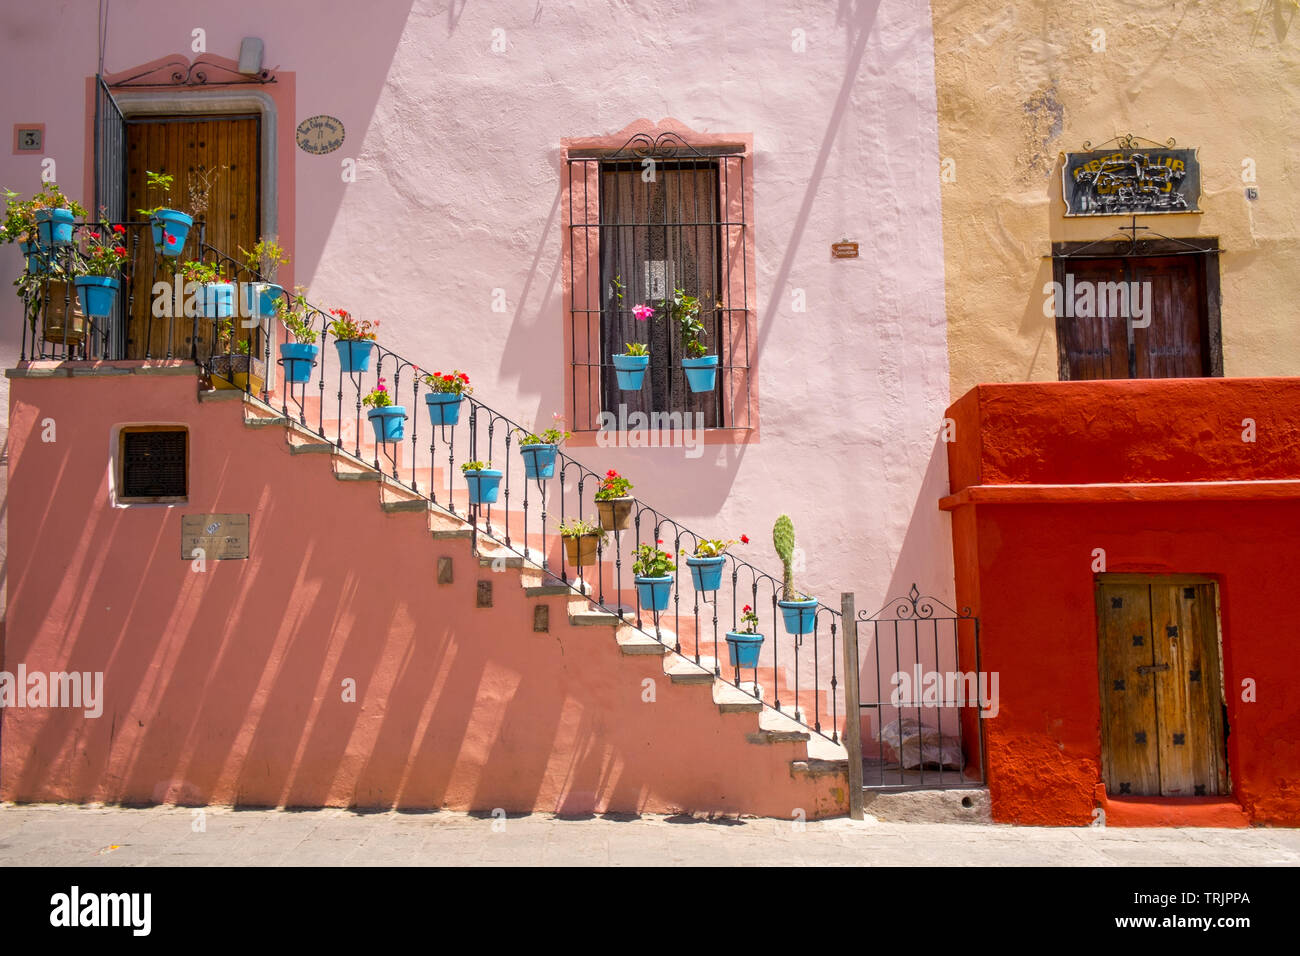 Mur coloré avec des fleurs et des escaliers, Guanajuato, Mexique Banque D'Images